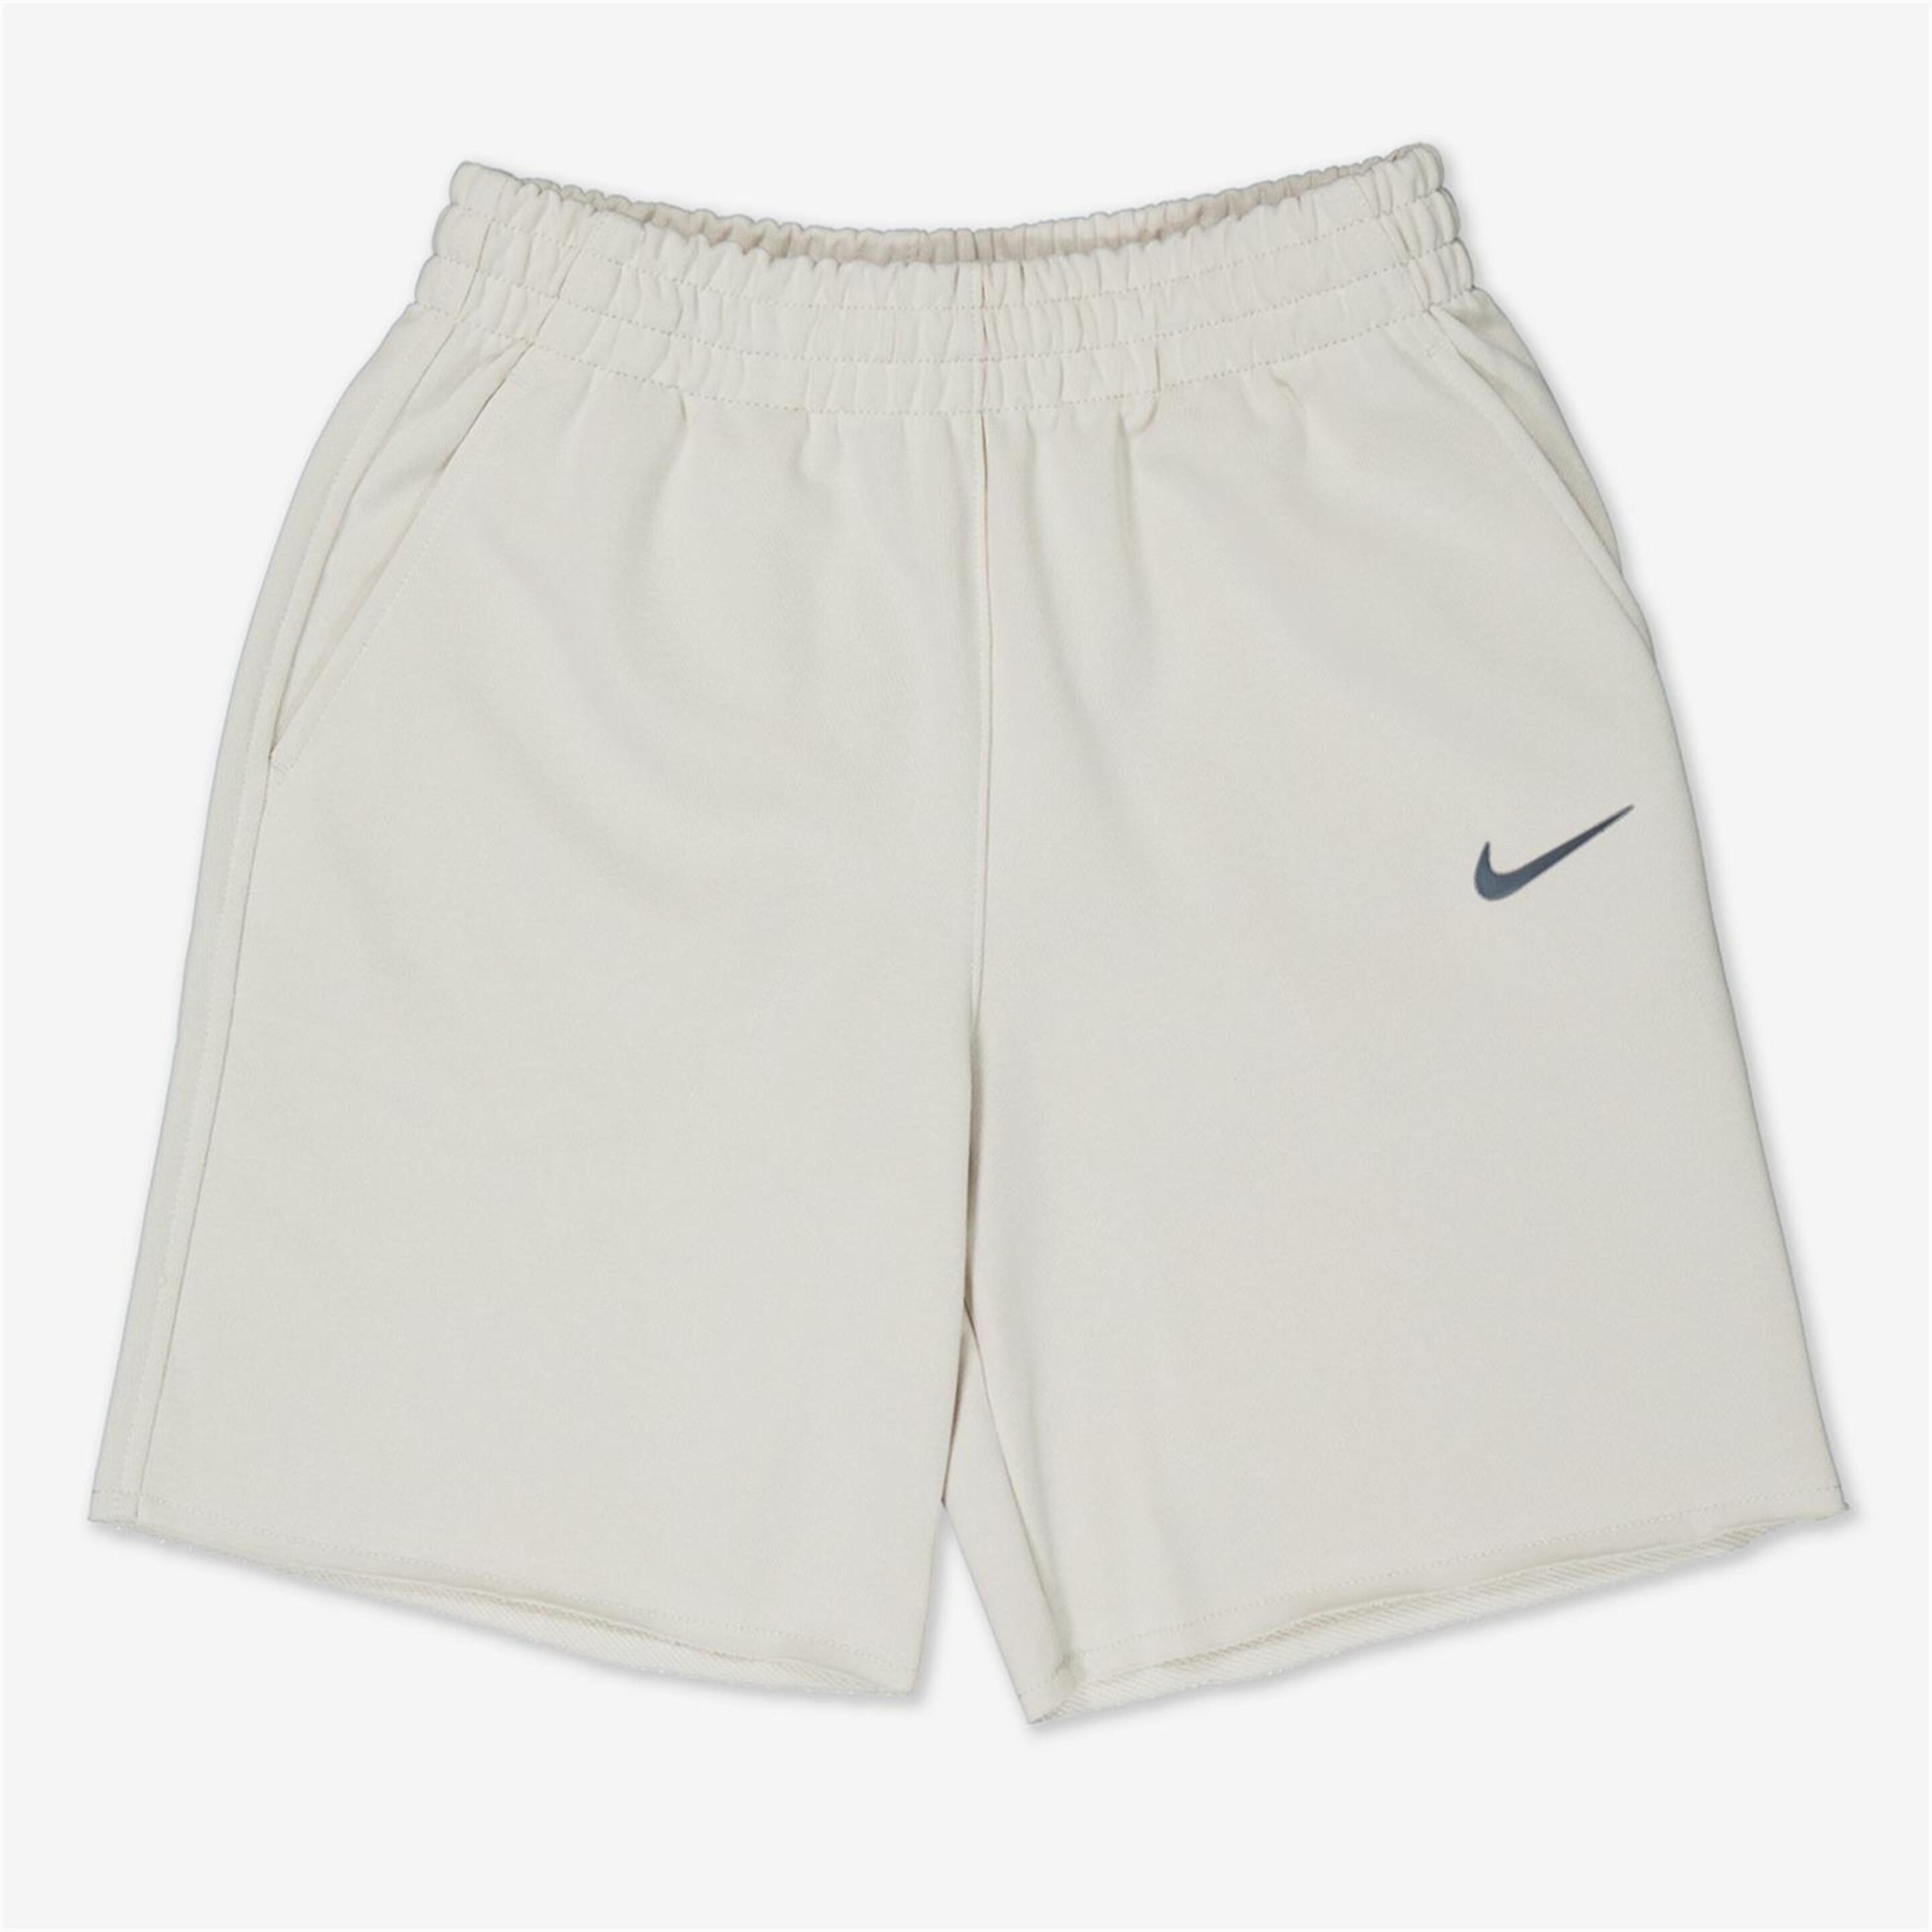 Pantalón Nike - marron - Bermuda Niña